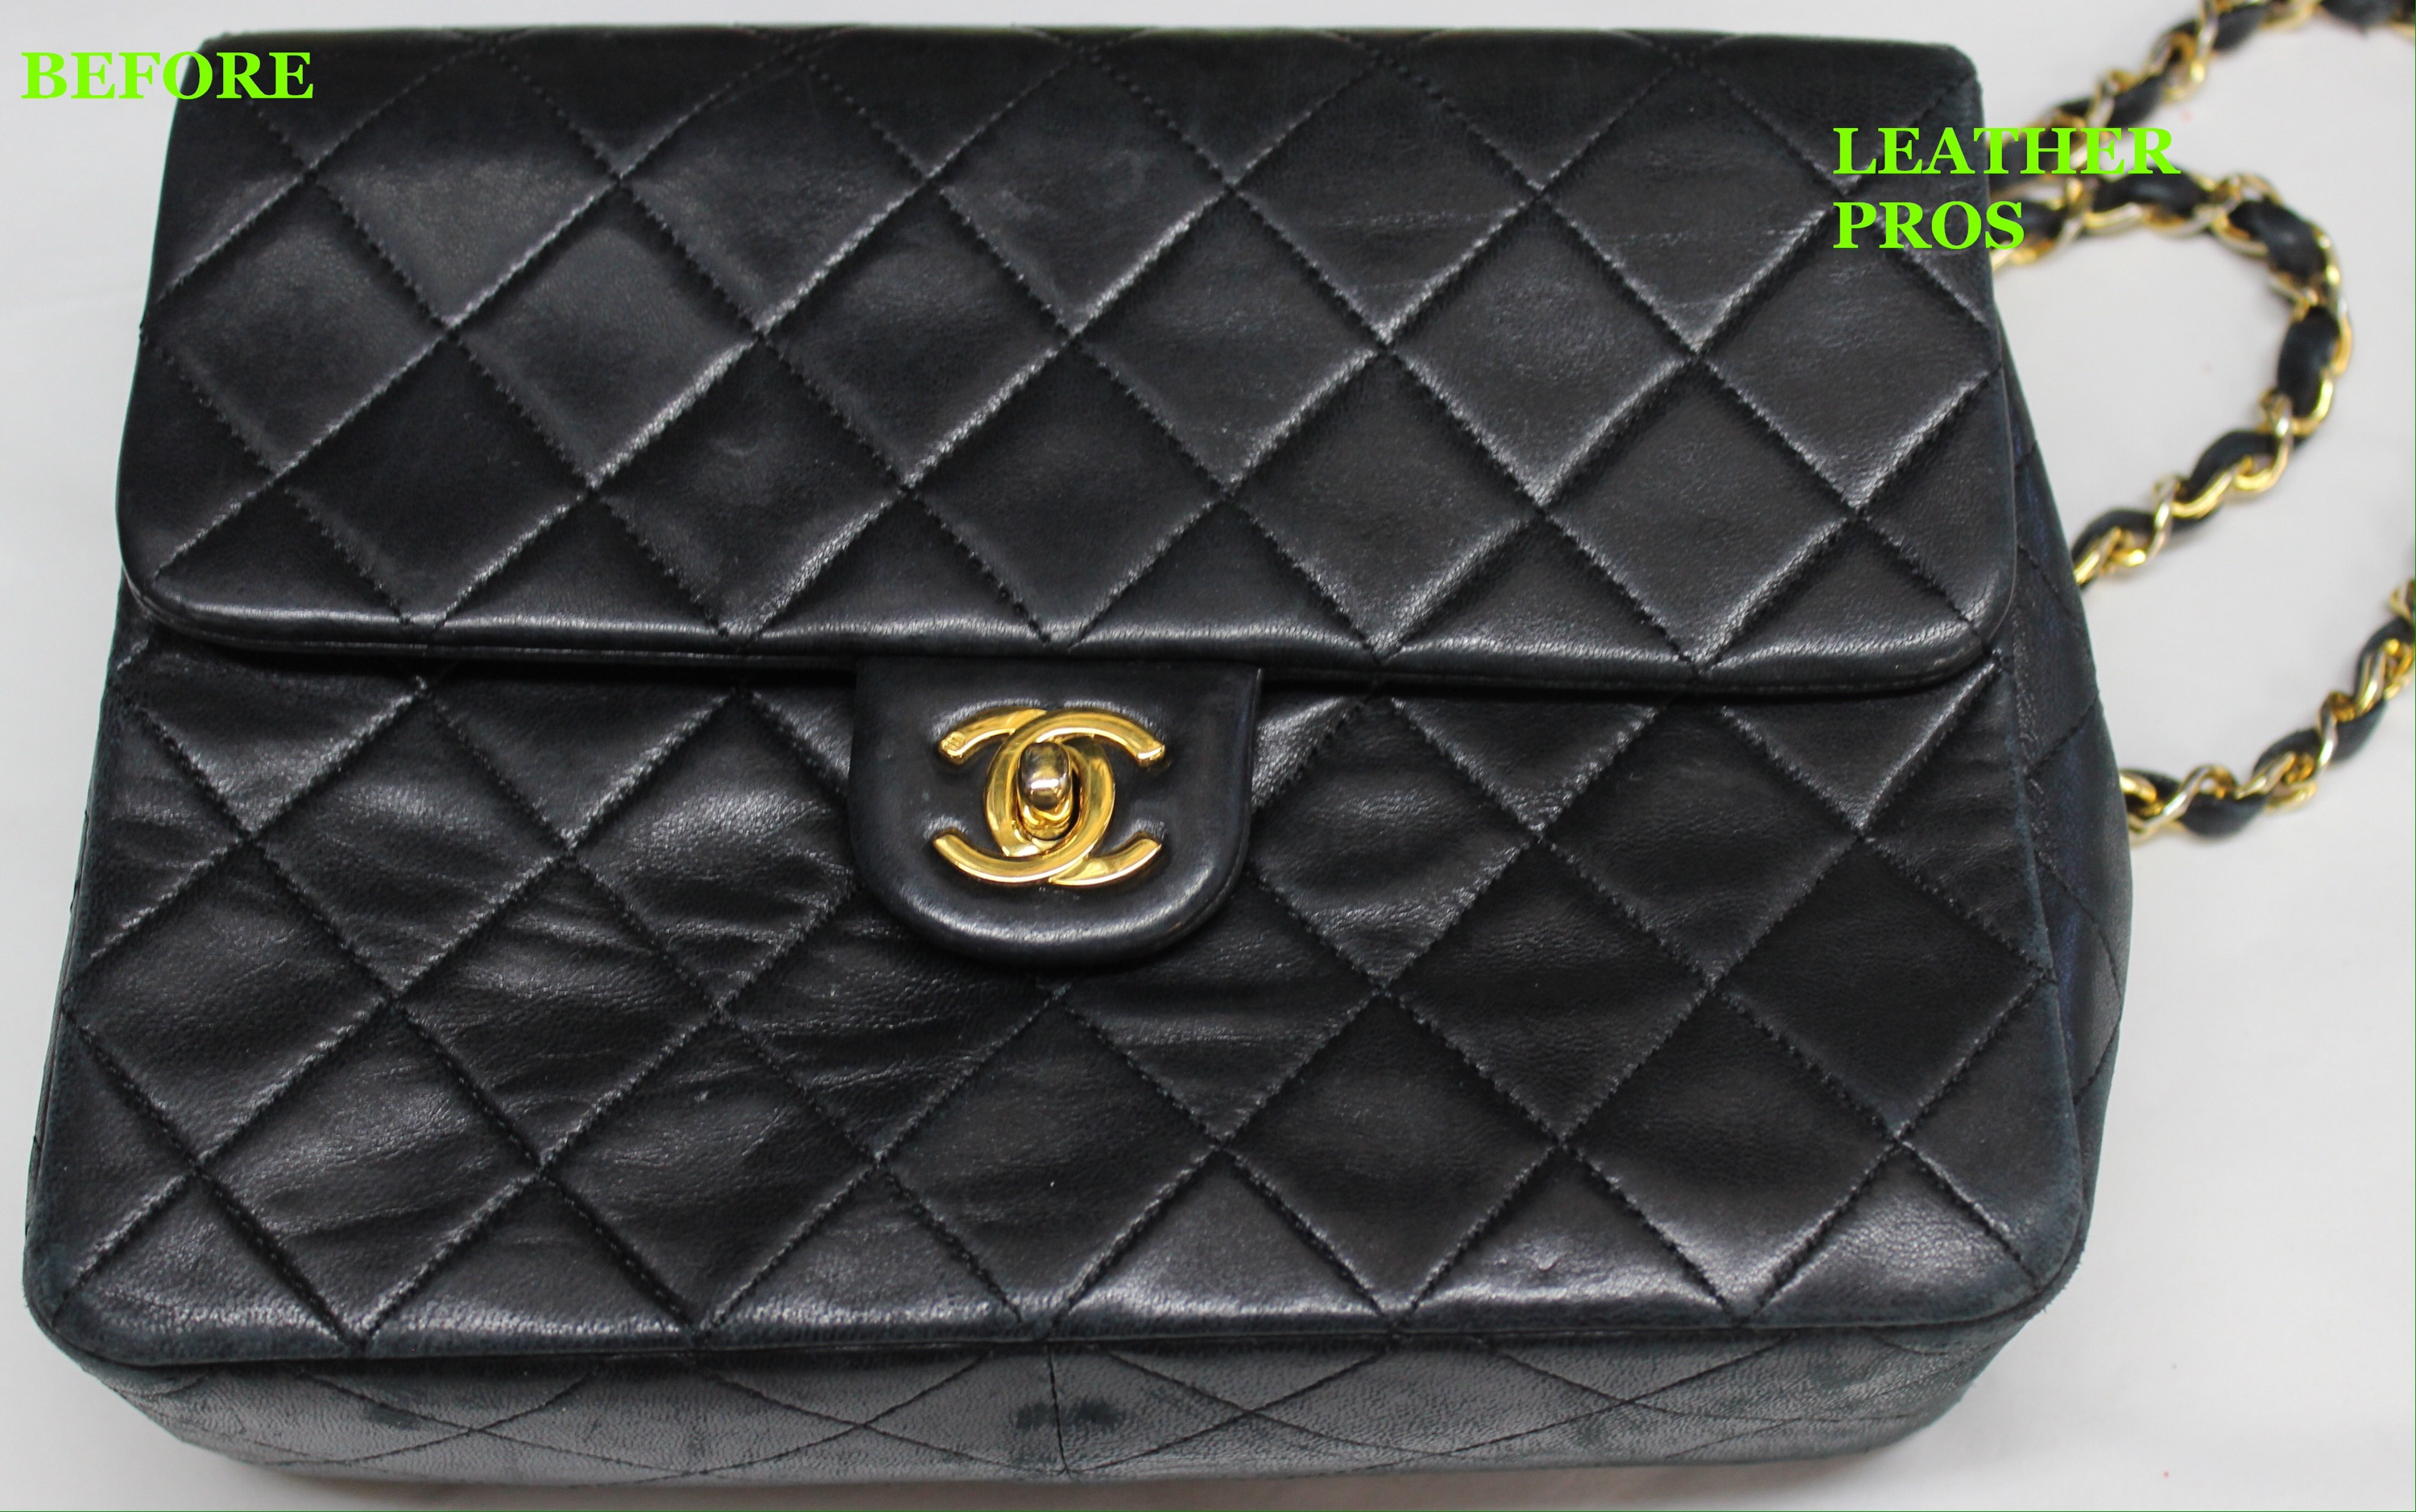 Refinish Black Chanel Handbag